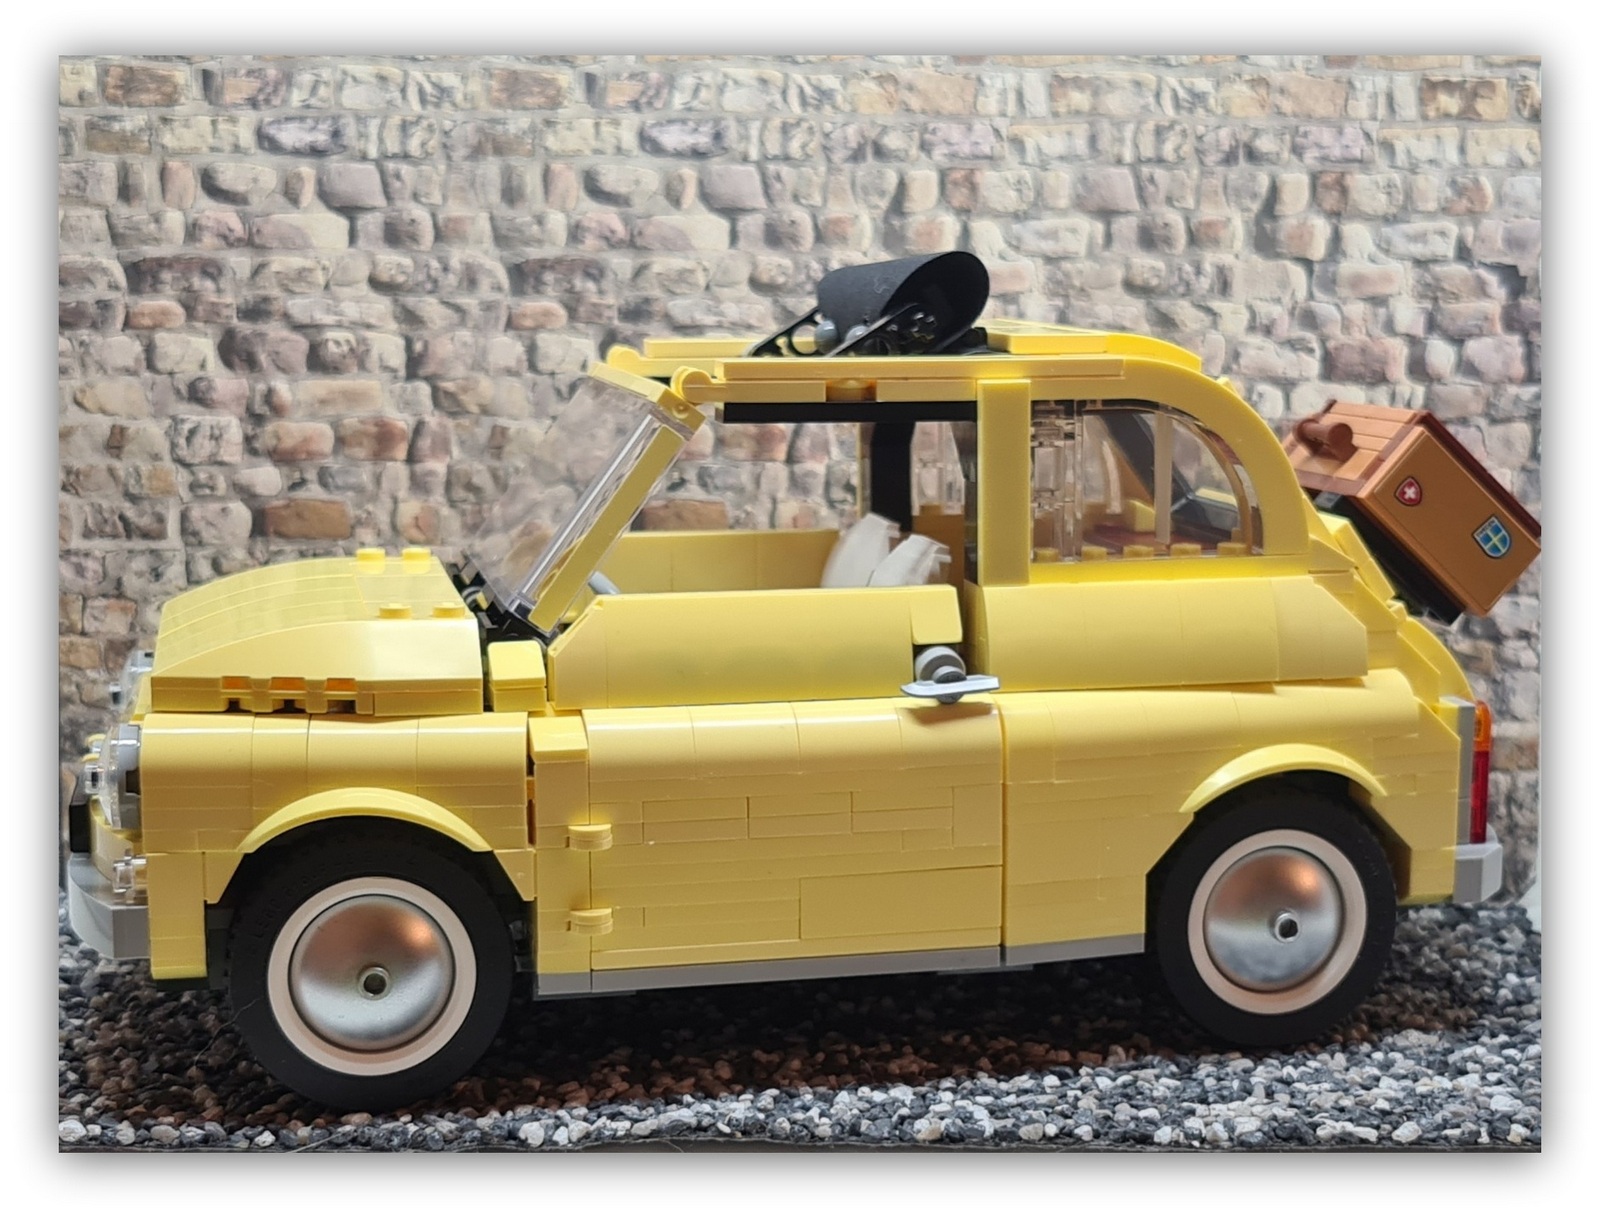 FIAT 500 Dolce Vita: Small Car